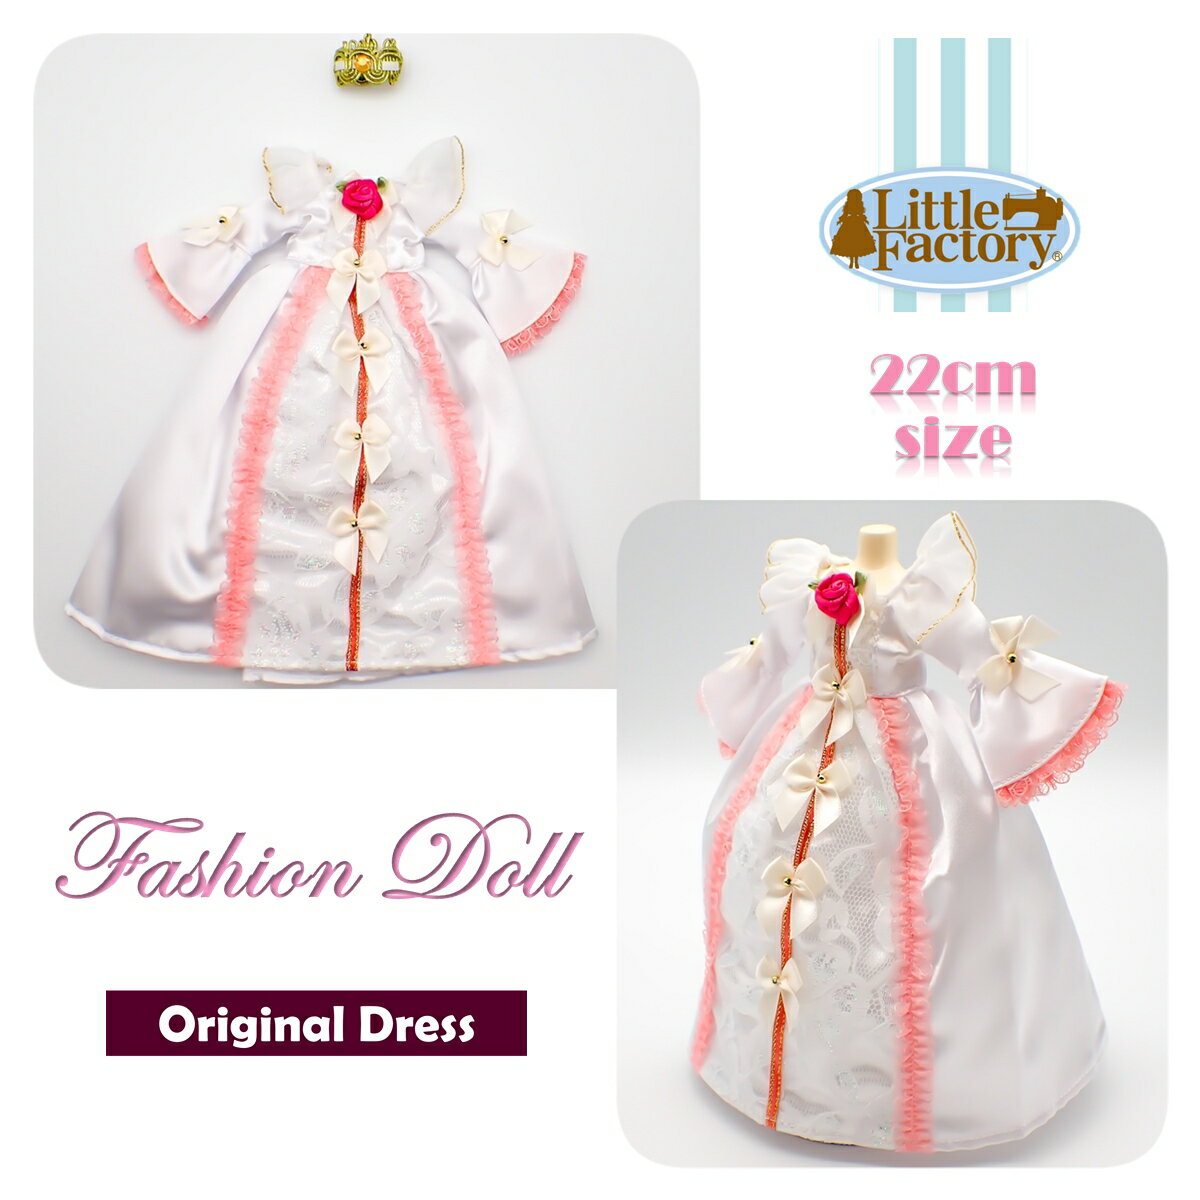 着せ替え 人形 ドレス お人形 22cm ドールサイズリトルファクトリー オリジナルドレスFASHION DOLL DRESS OUTFITS LITTLE FACTORY